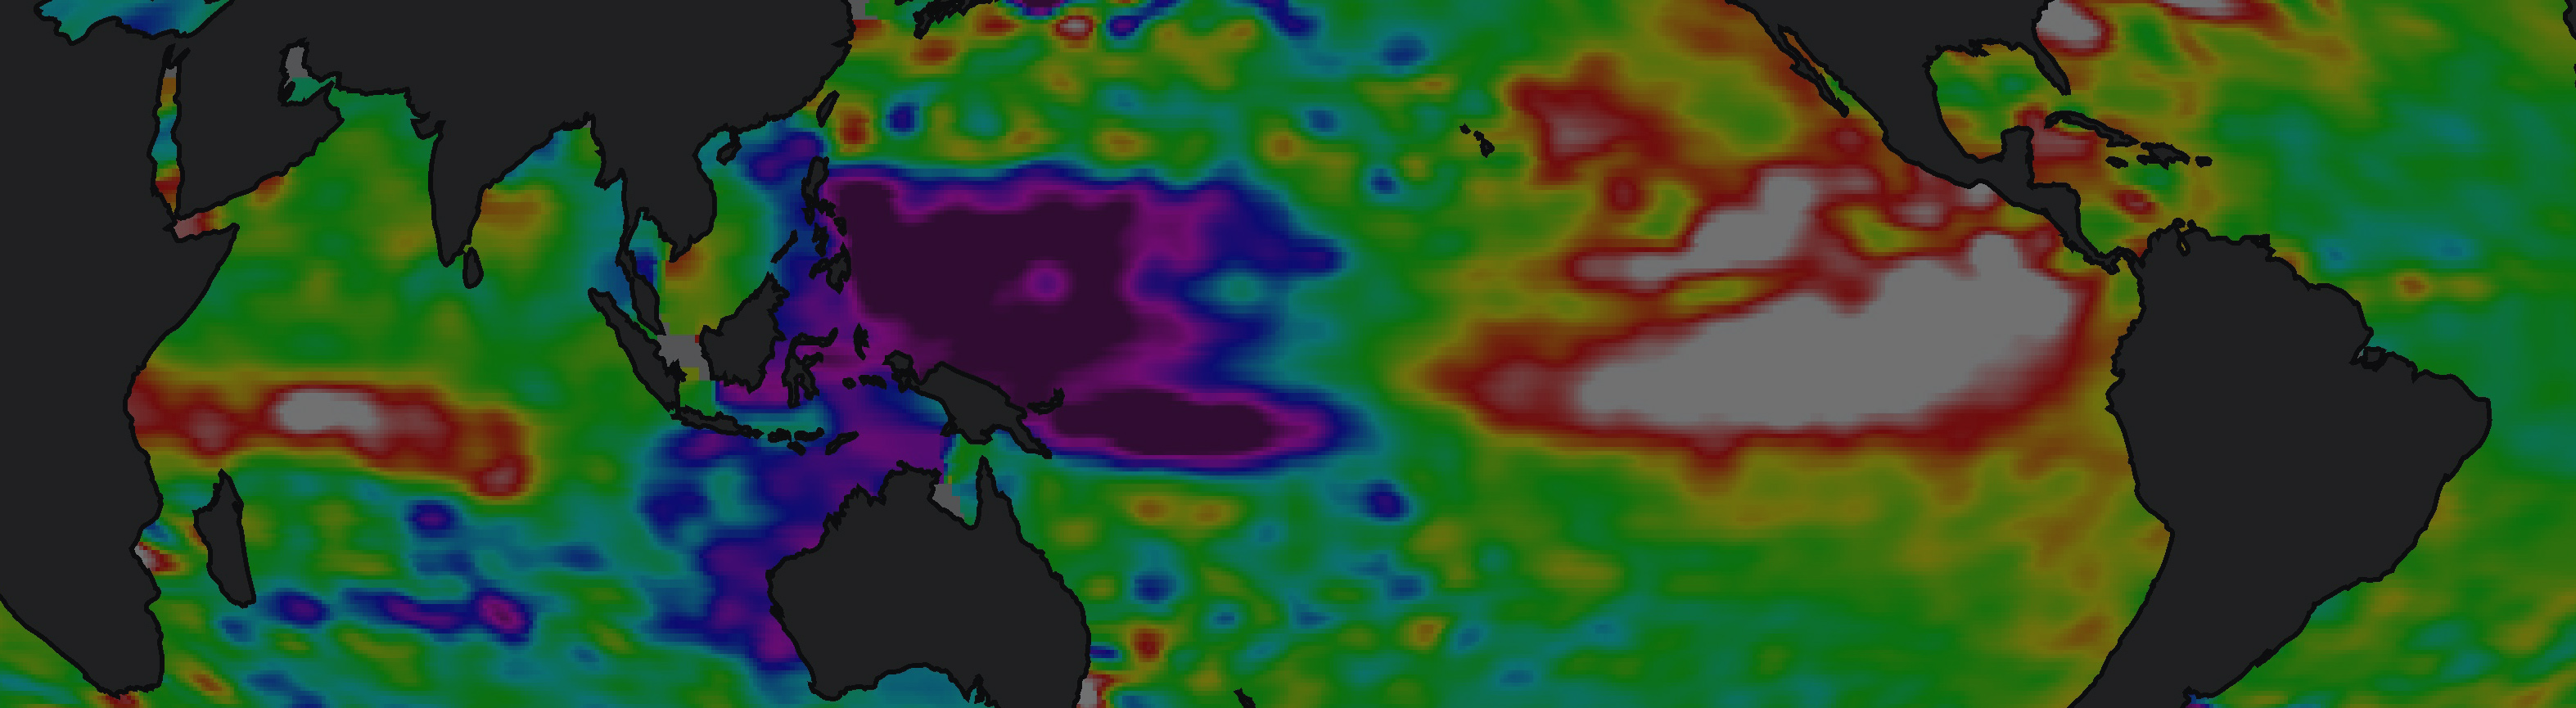 Earth radar image